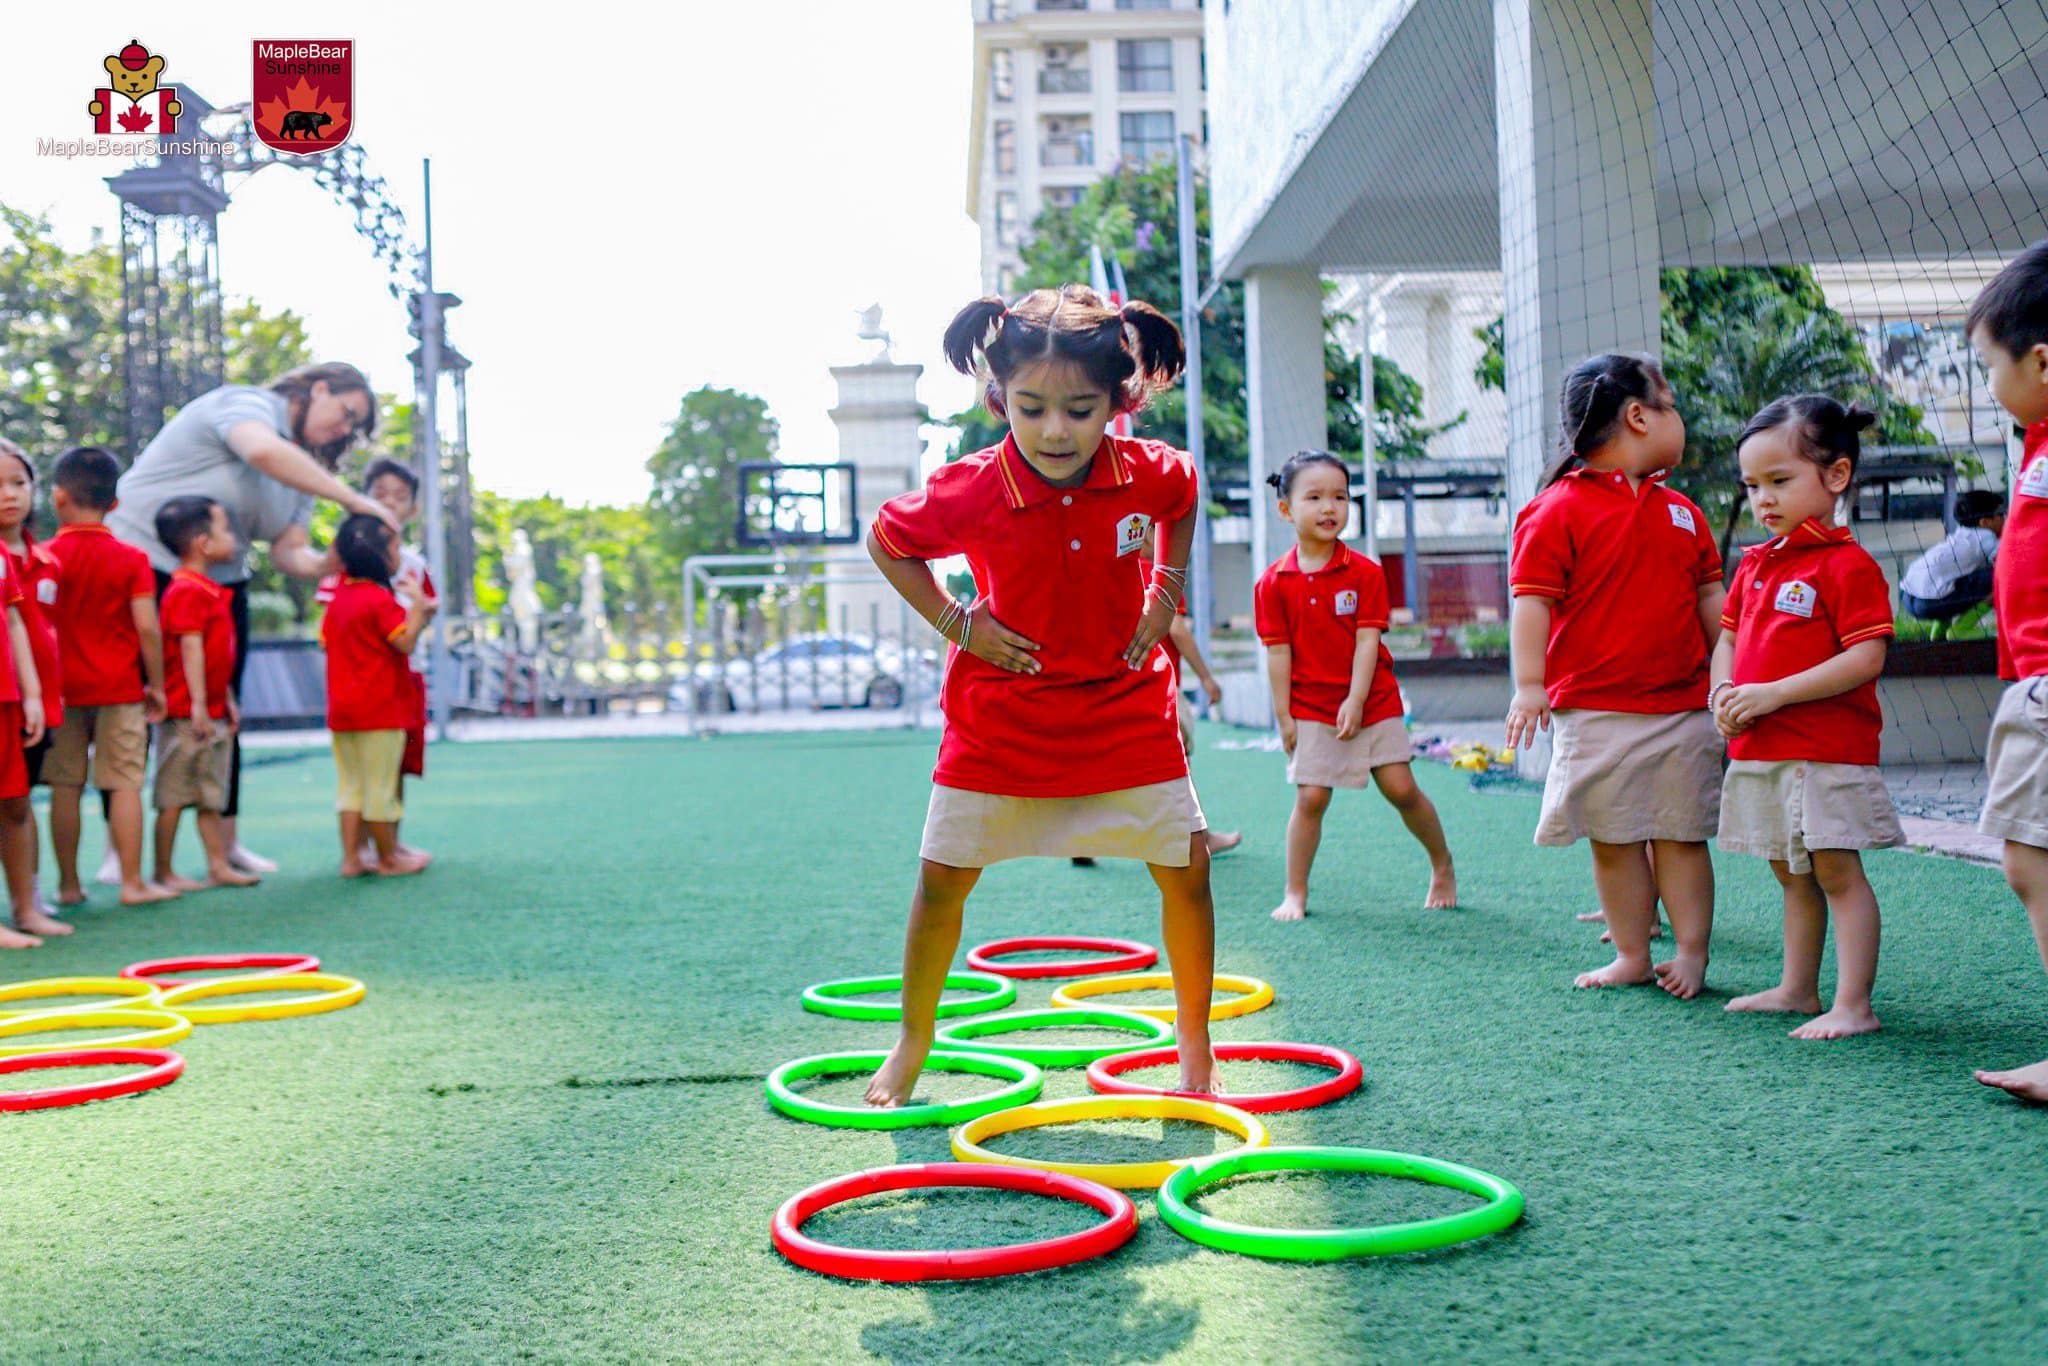 Đưa trò chơi vào vận động cho trẻ giúp phát triển cả thể chất tinh thần